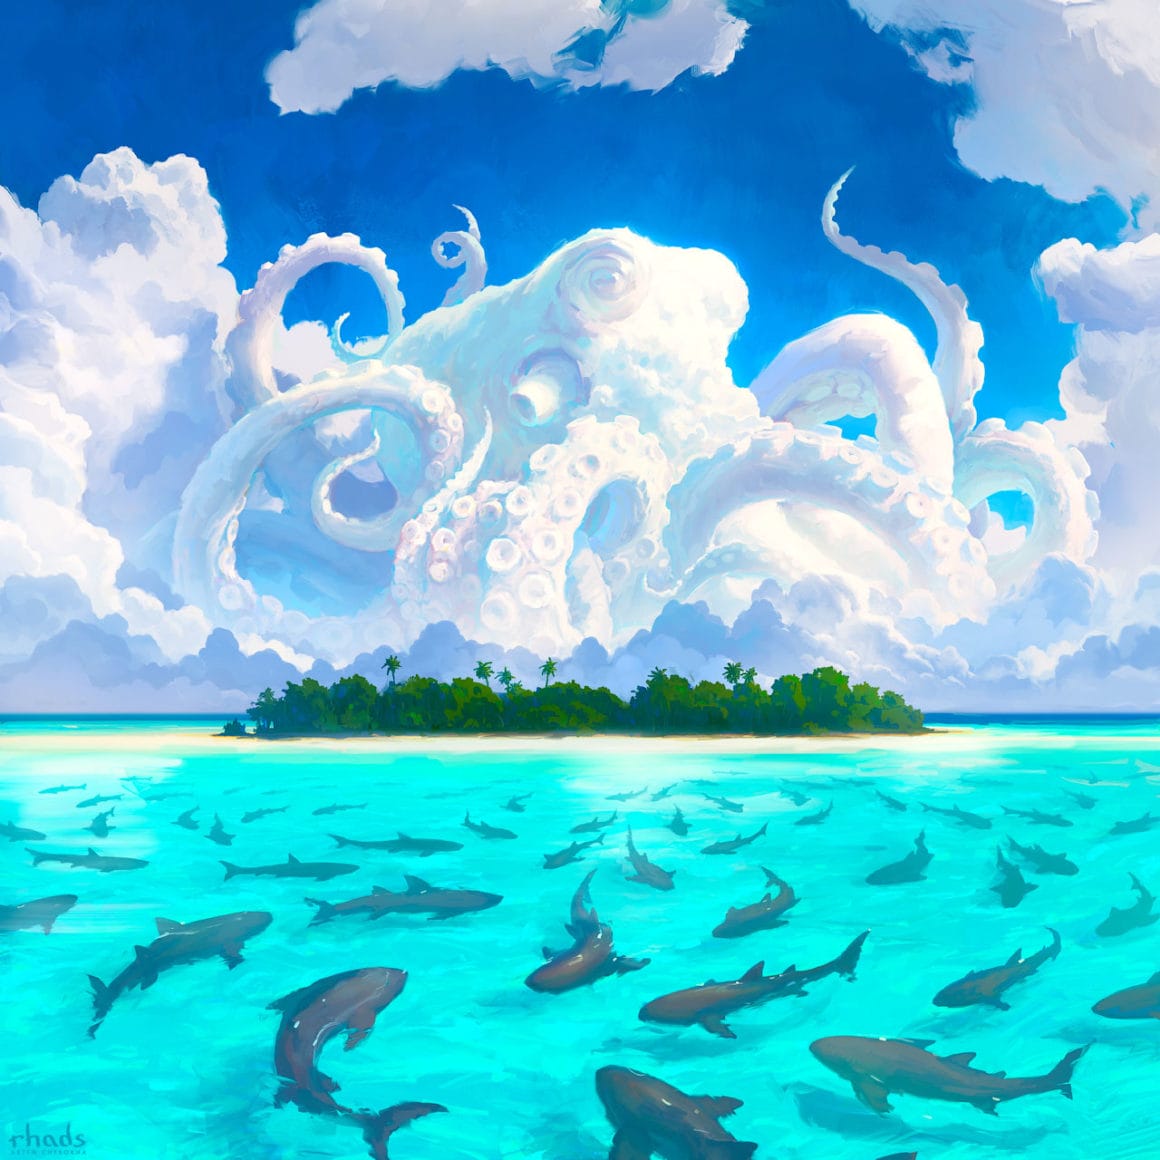 Pieuvre se mêlant aux nuages au dessus d'une ile entourée de requins